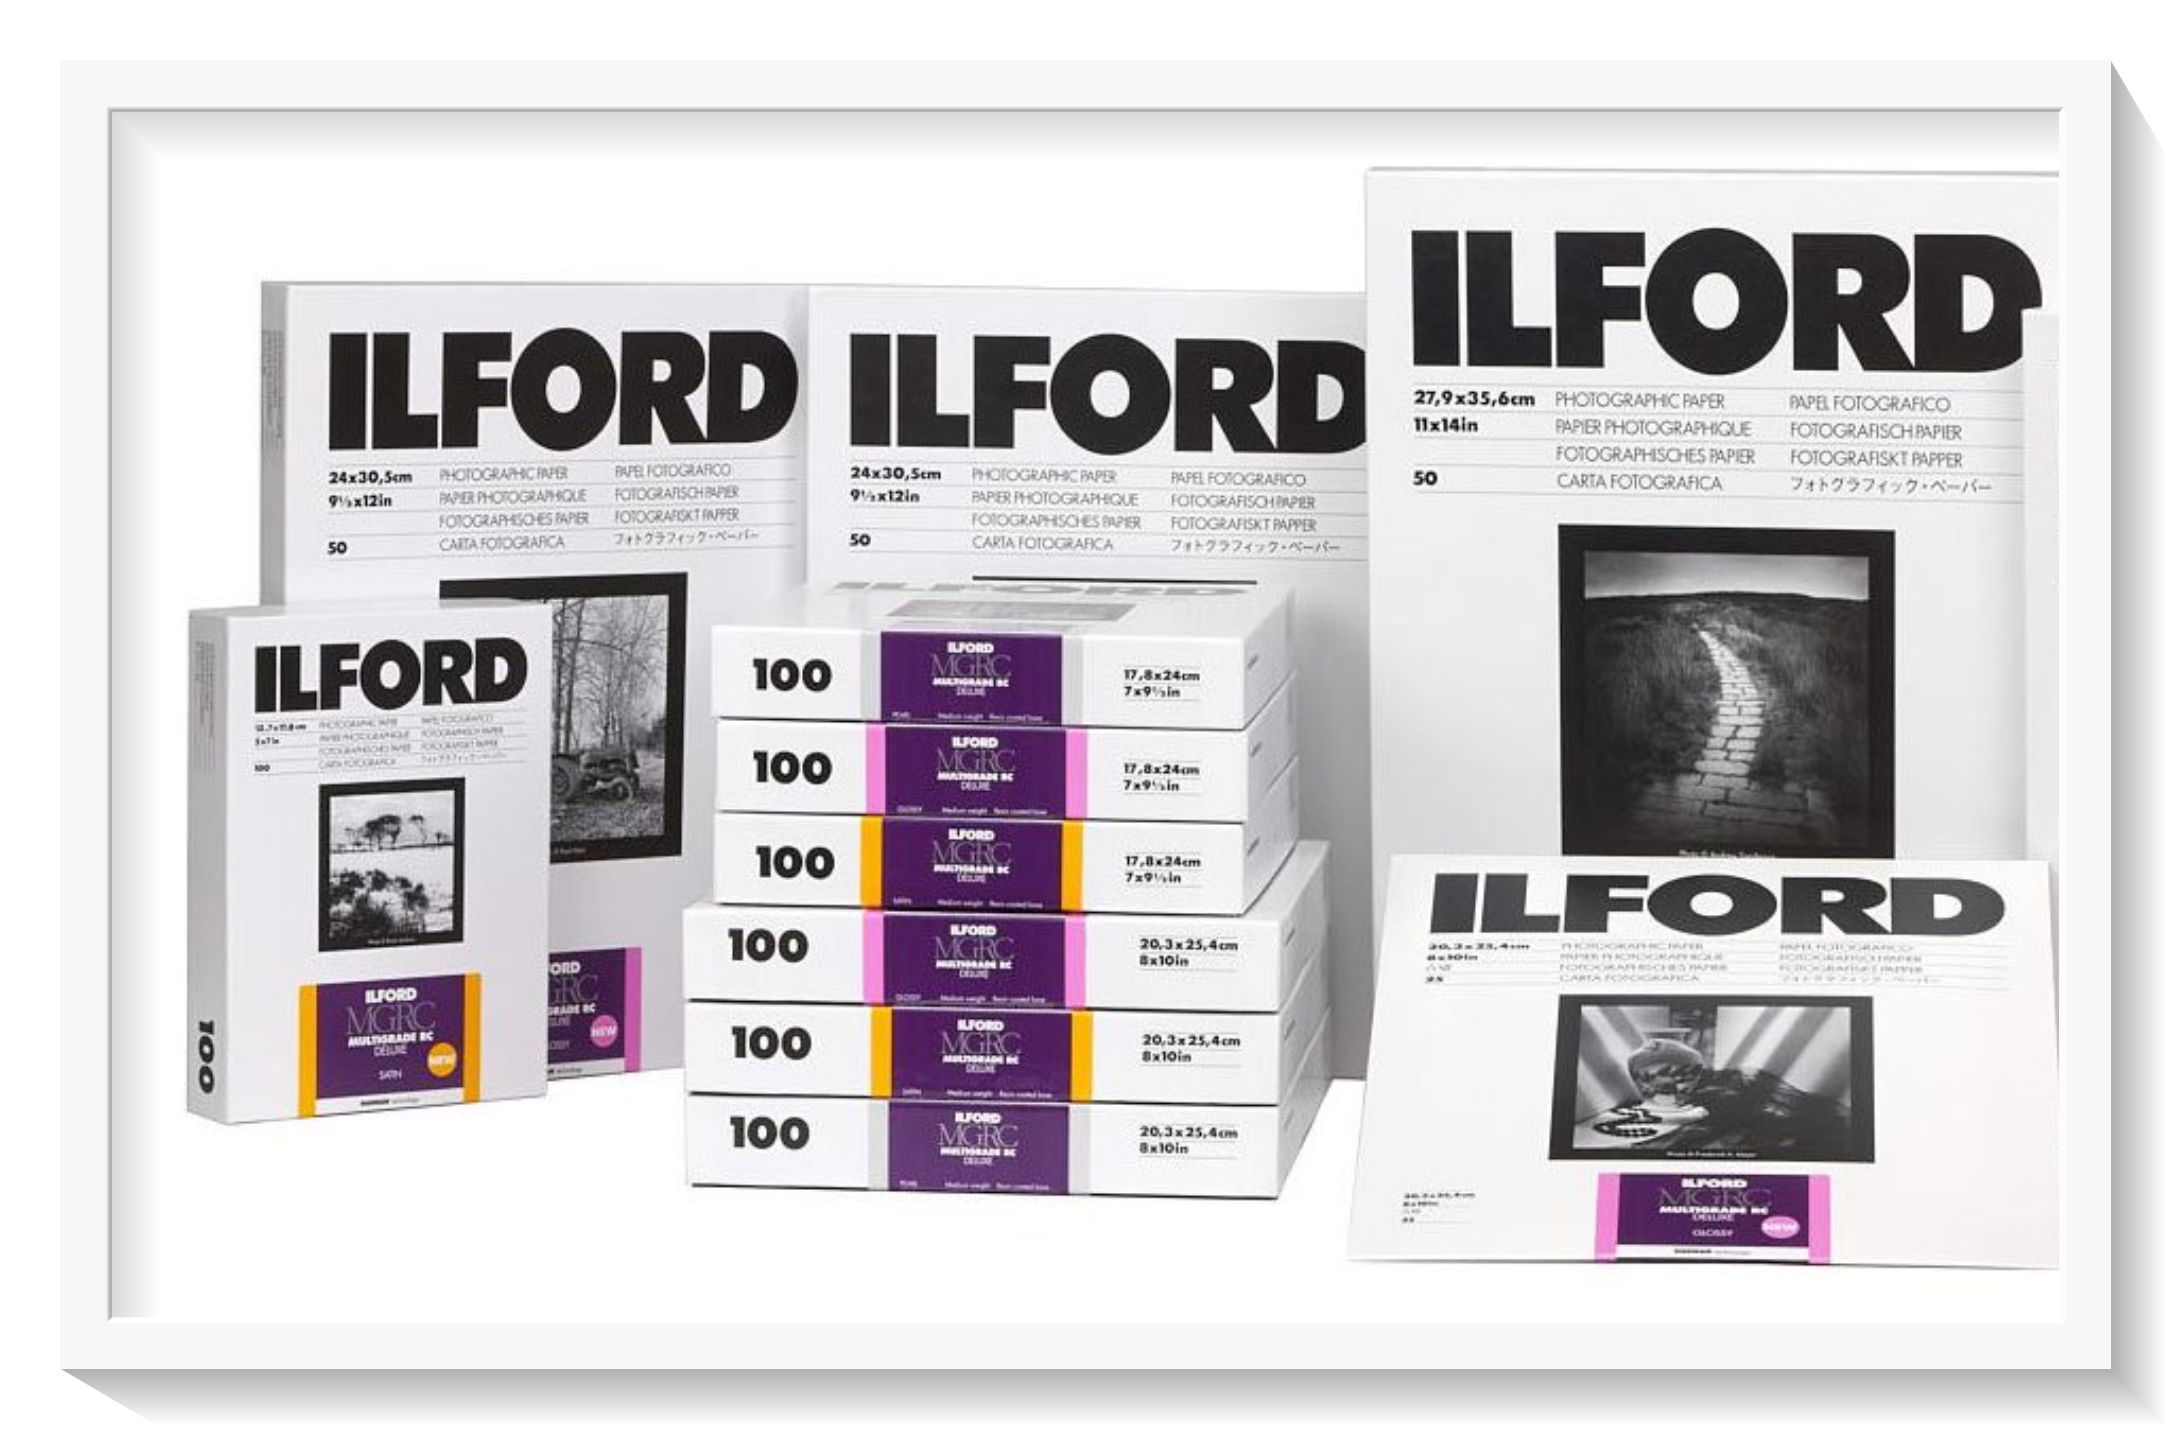 Ilford giới thiệu film 135mm & 120mm Ortho Plus, giấy MULTI RC thế hệ 5 cùng bộ kit tráng film